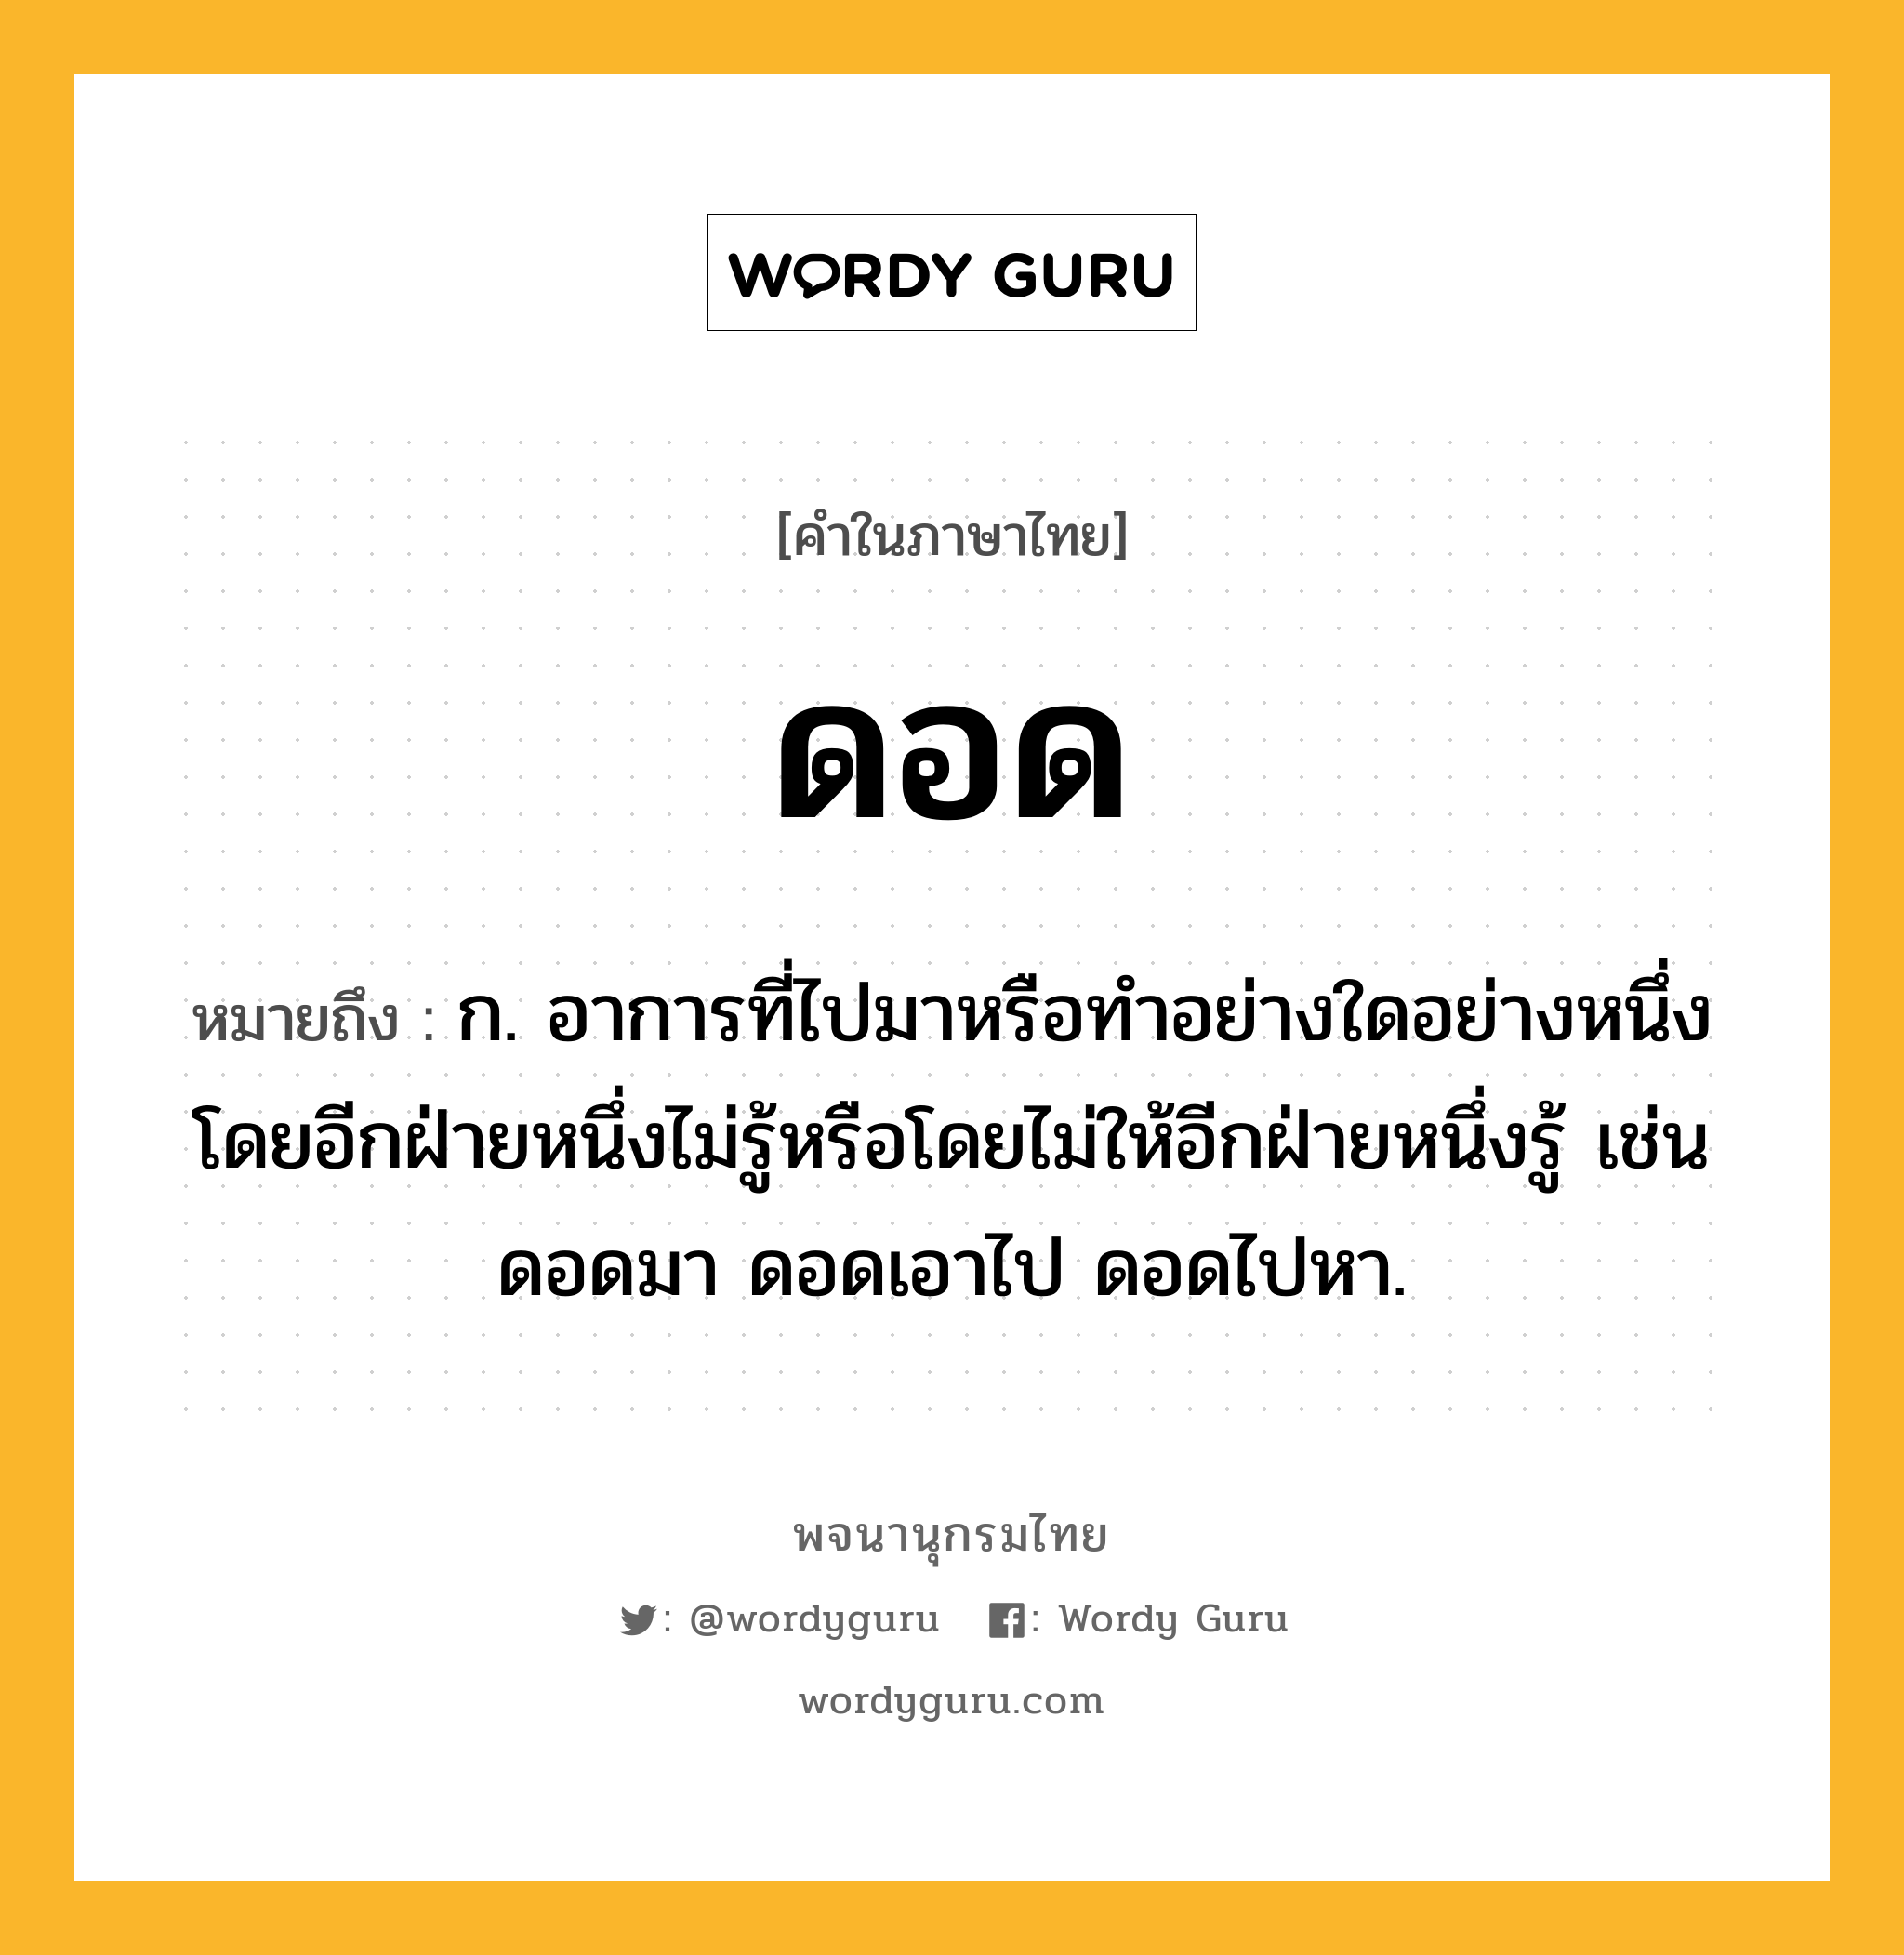 ดอด ความหมาย หมายถึงอะไร?, คำในภาษาไทย ดอด หมายถึง ก. อาการที่ไปมาหรือทําอย่างใดอย่างหนึ่งโดยอีกฝ่ายหนึ่งไม่รู้หรือโดยไม่ให้อีกฝ่ายหนึ่งรู้ เช่น ดอดมา ดอดเอาไป ดอดไปหา.